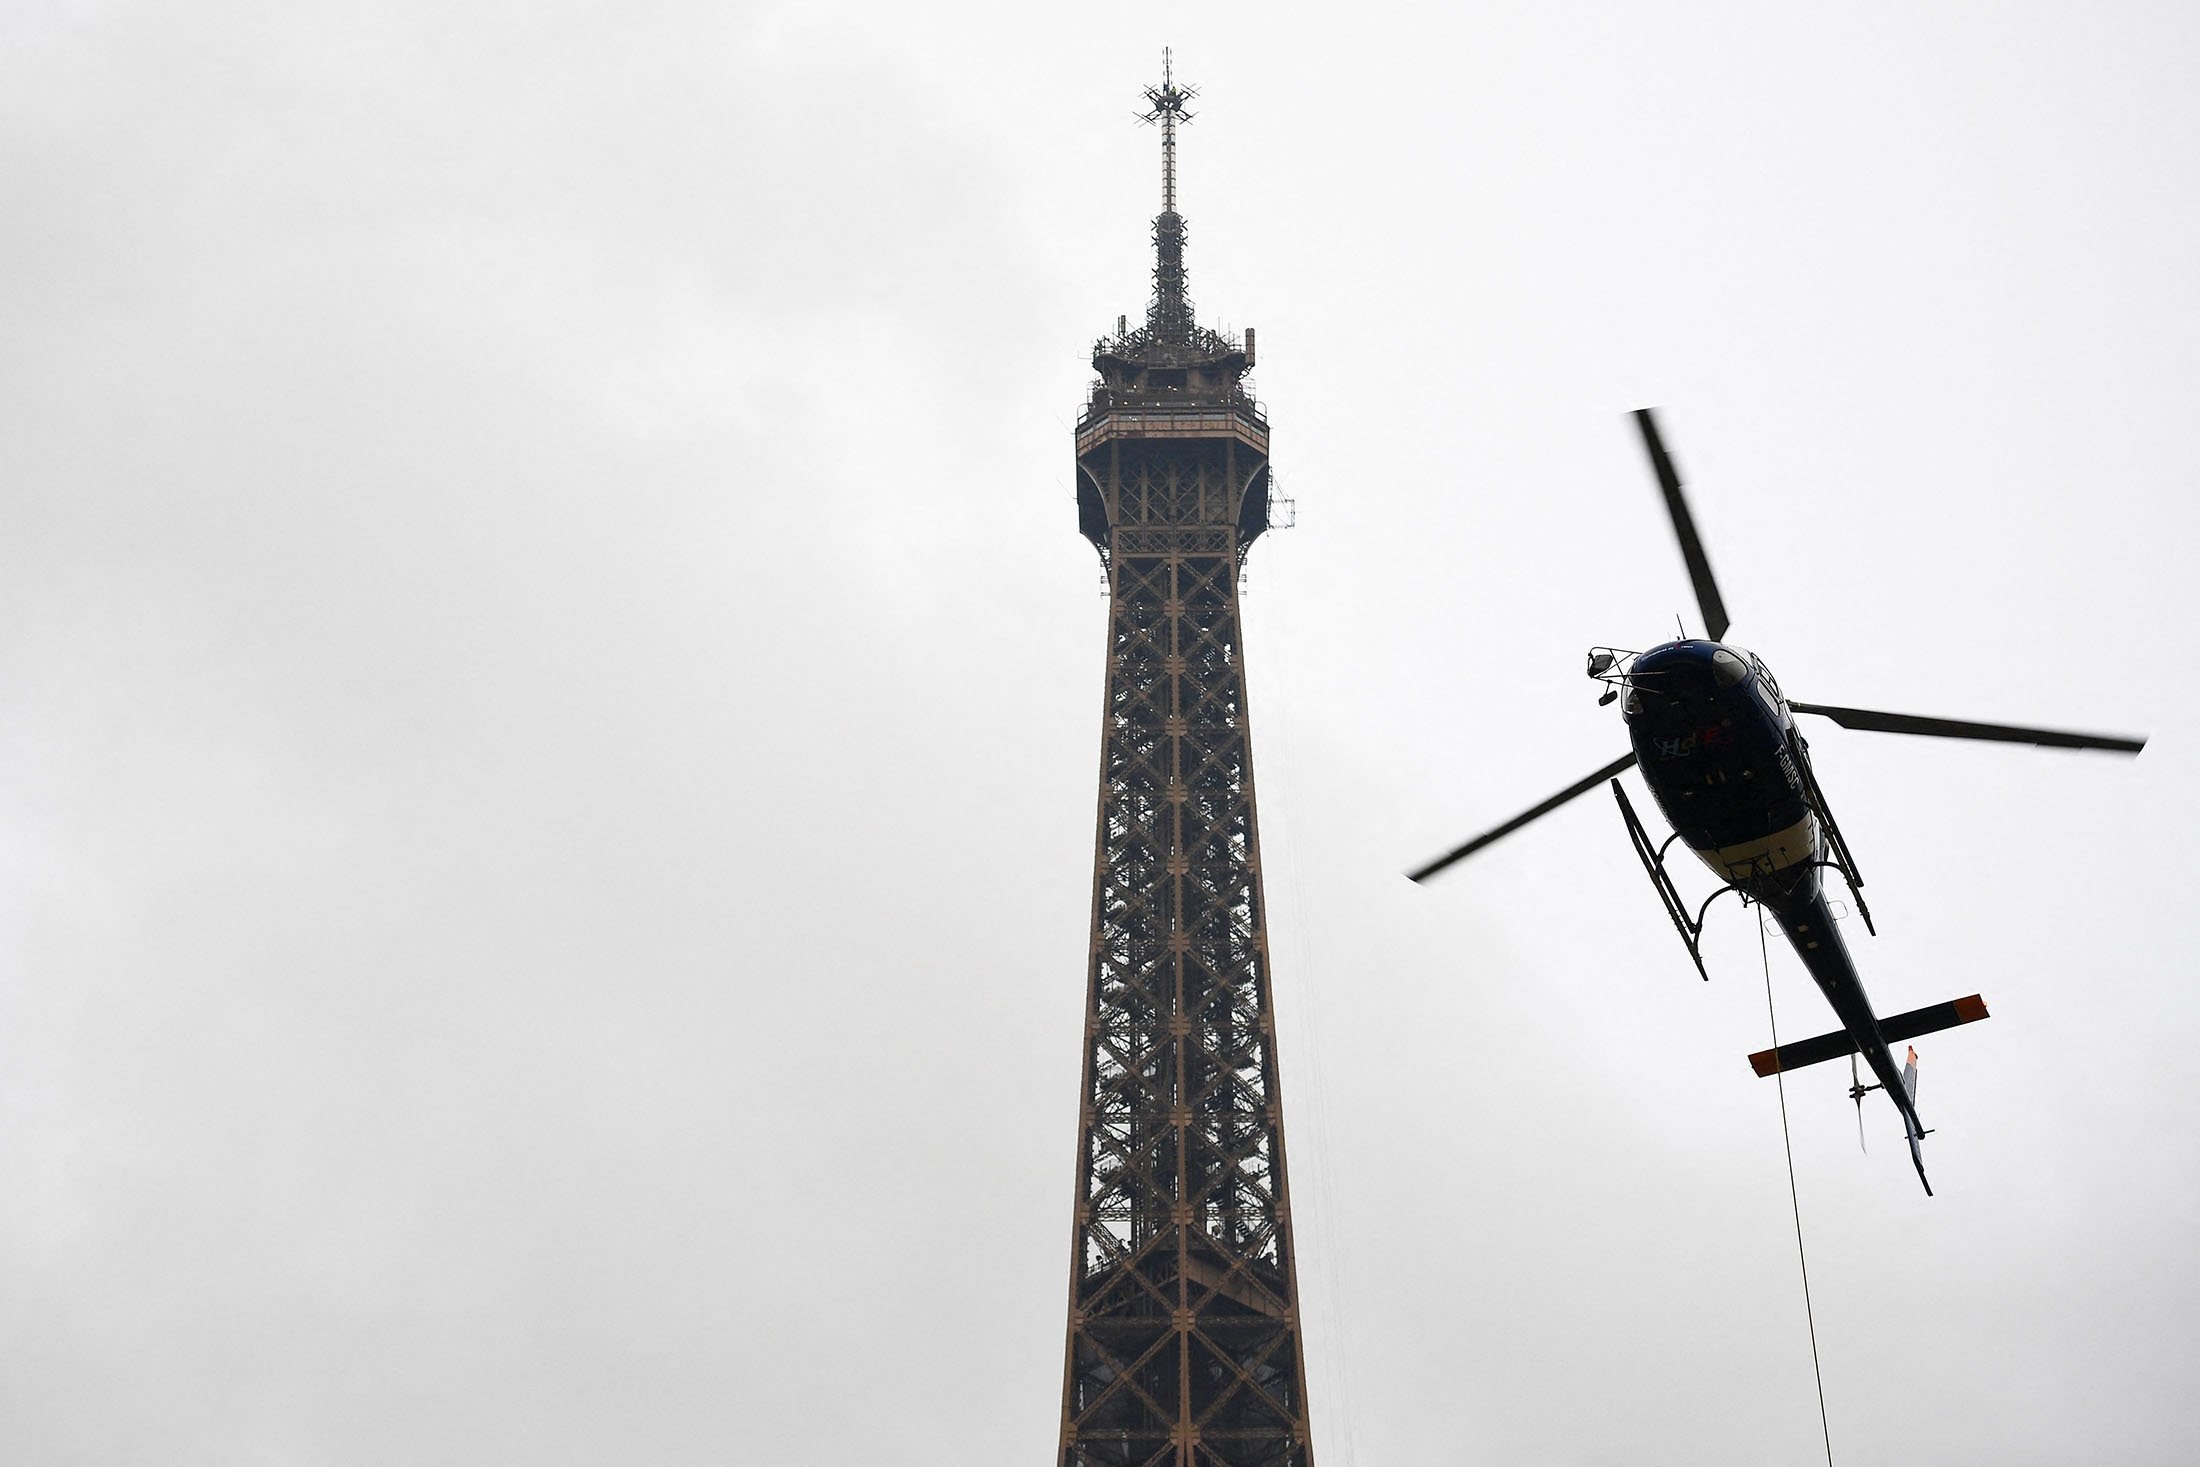 Antena baru dipasang oleh Eurocopter AS355N Ecureuil 2 di puncak Menara Eiffel, di Paris, Prancis, 15 Maret 2022. (AFP Photo)